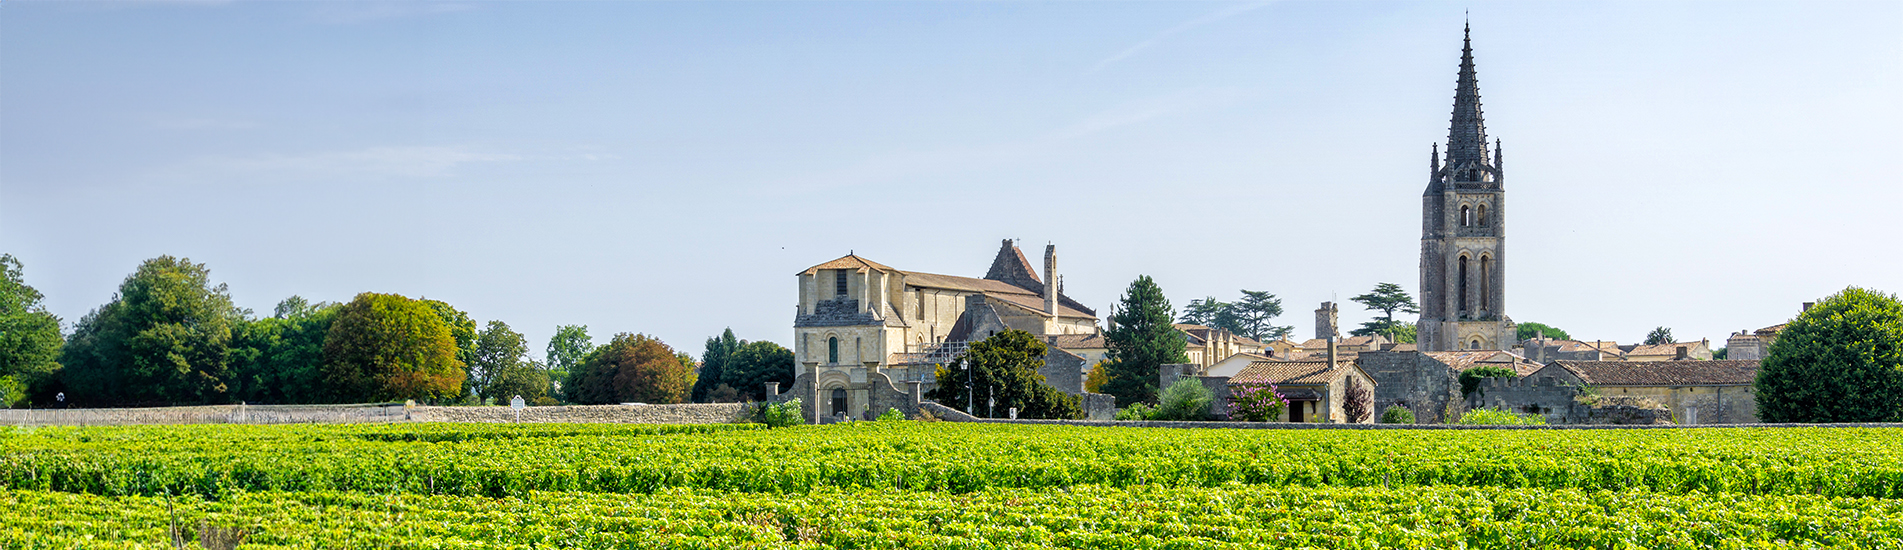 Vue sur un vignoble verdoyant avec le village de Saint-Émilion en Gironde et une église à clocher pointu en arrière-plan sous un ciel bleu légèrement nuageux.